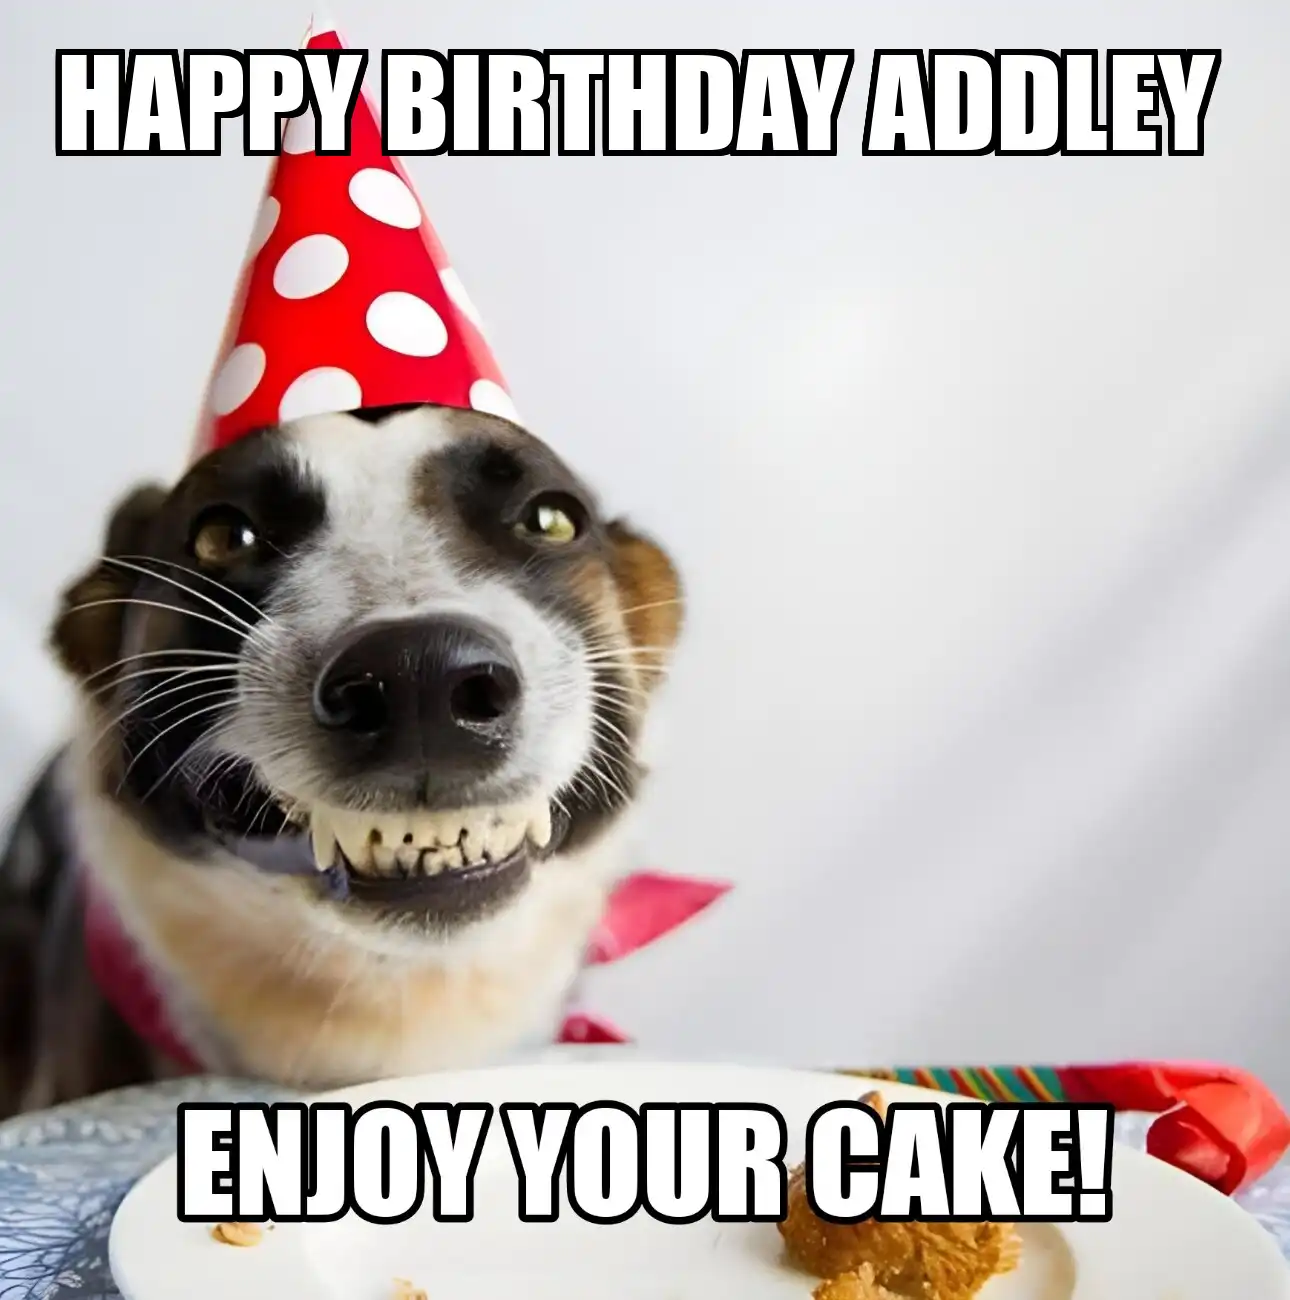 Happy Birthday Addley Enjoy Your Cake Dog Meme